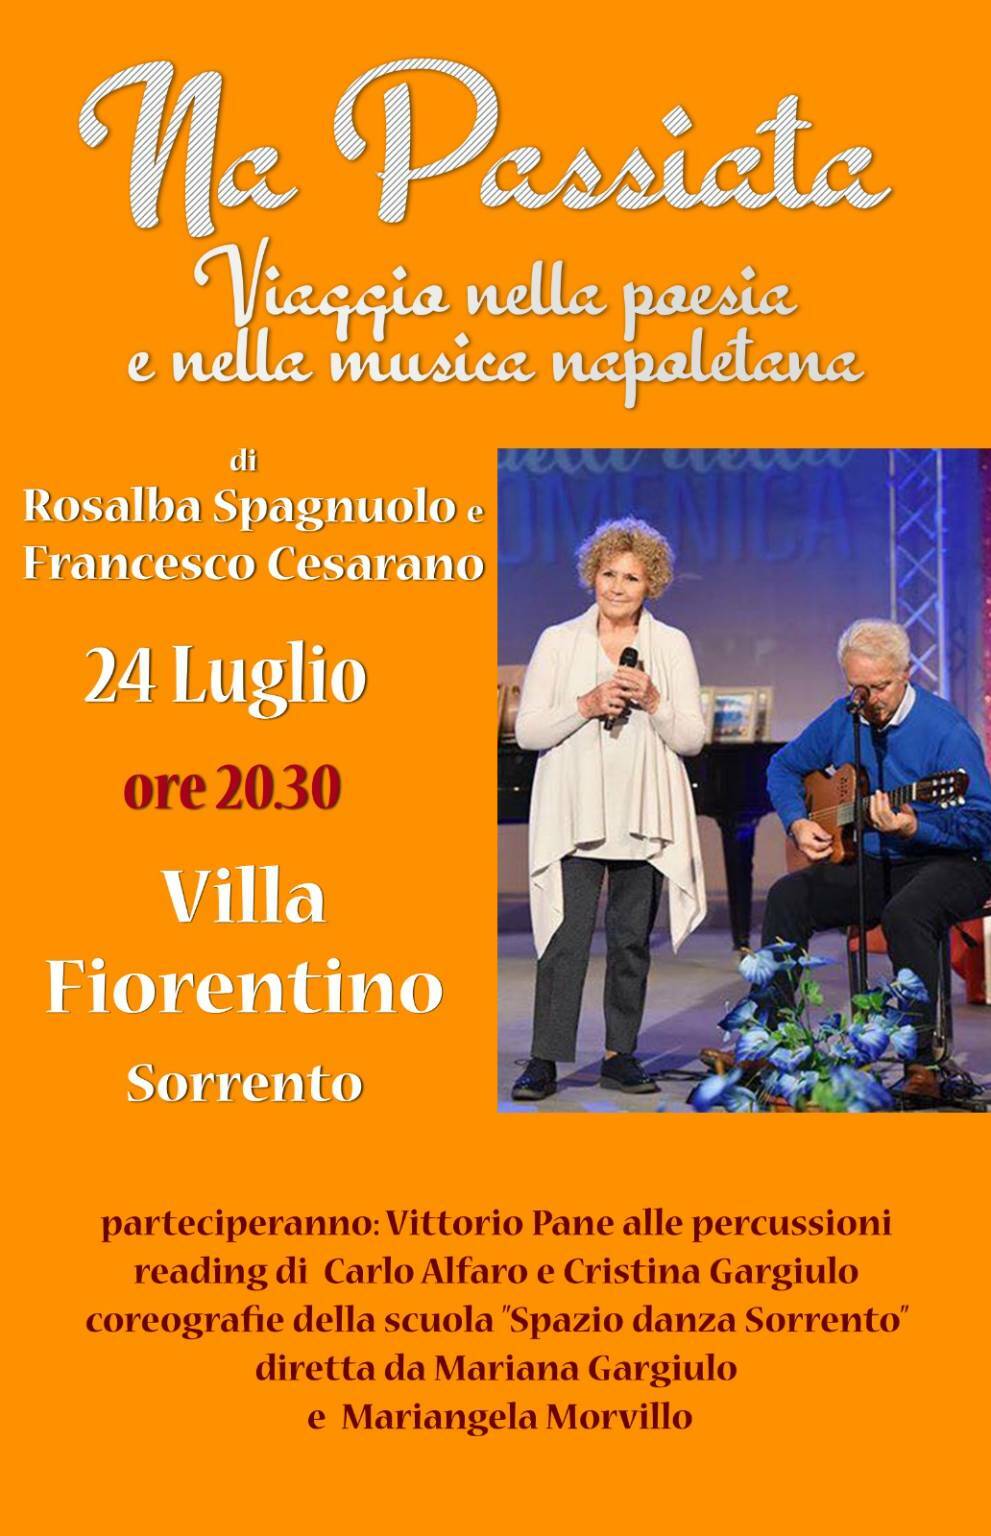 ‘Na Passiata’: la passeggiata del gruppo di Rosalba Spagnuolo tra musica e poesia napoletana a Villa Fiorentino sabato 24 luglio